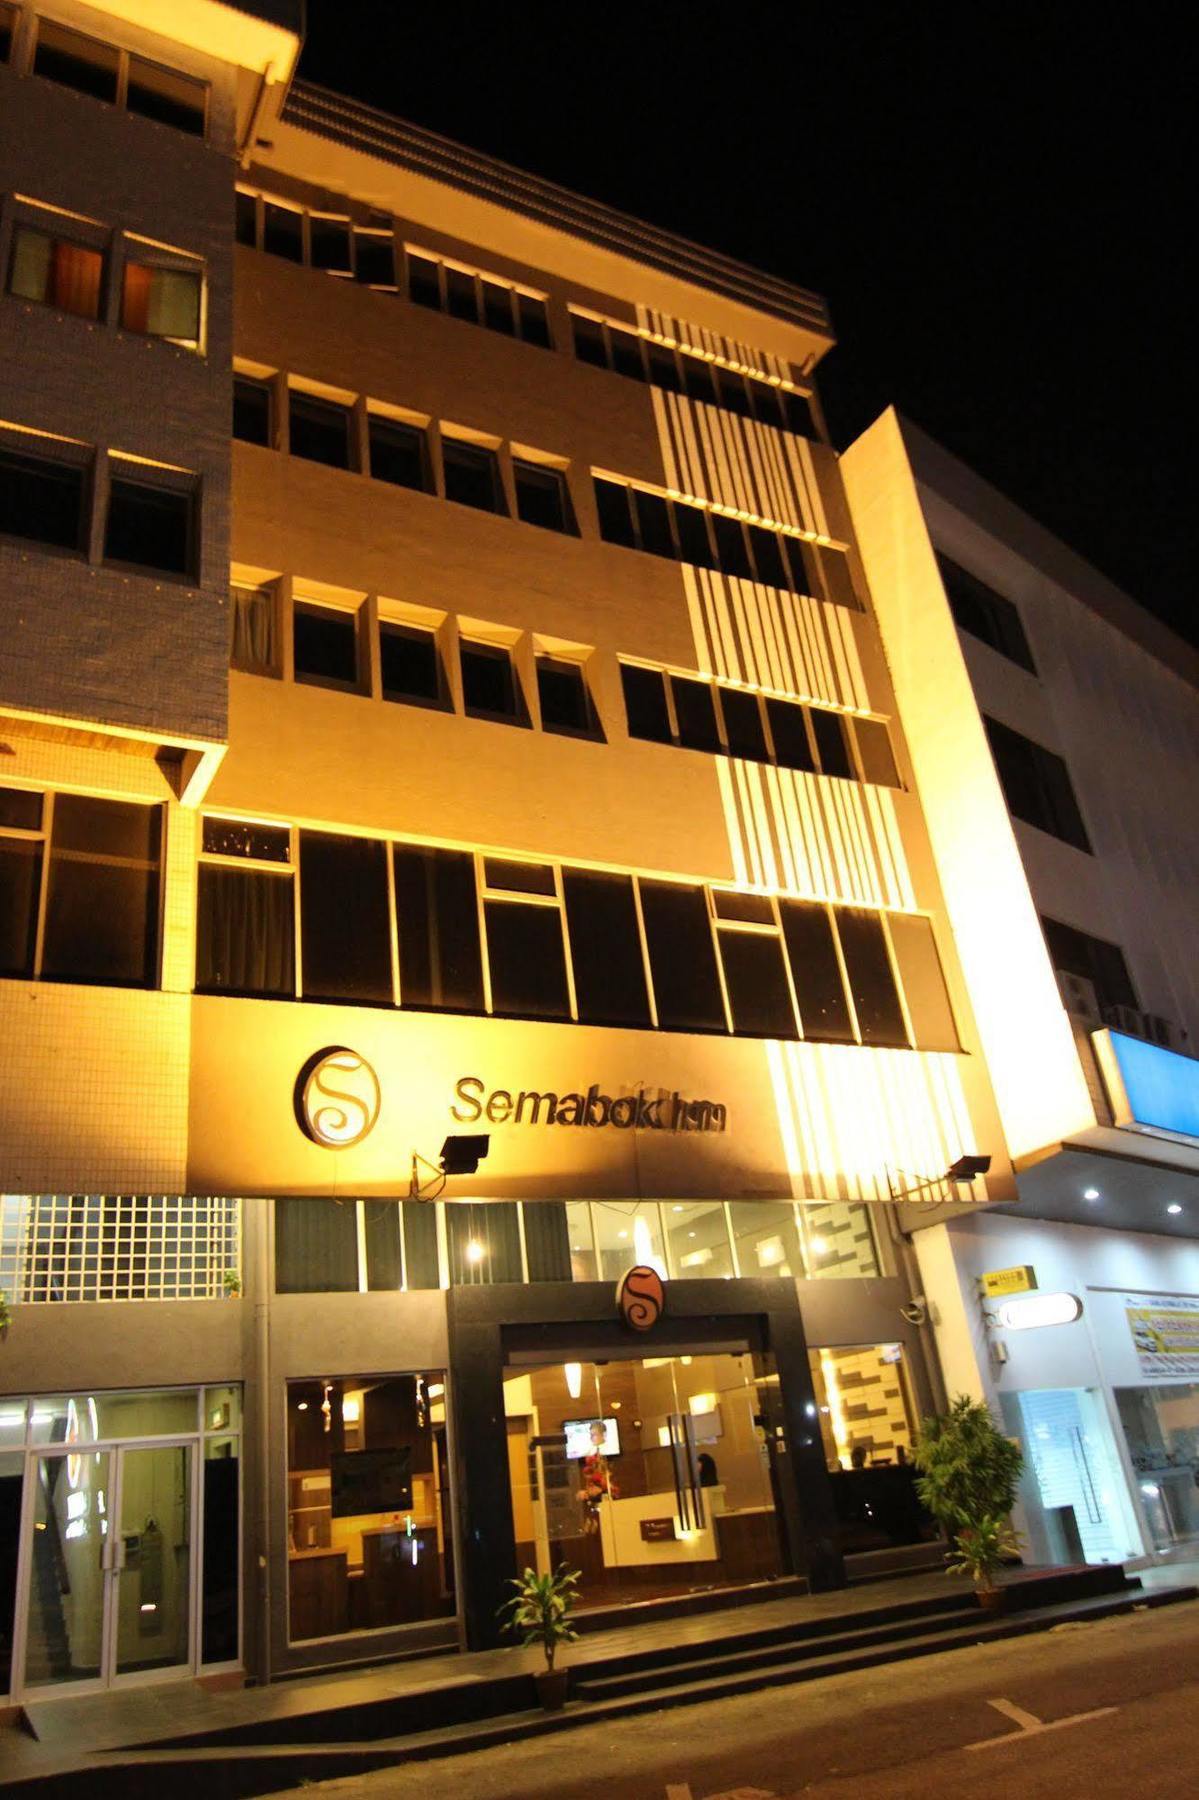 Hotel Zamburger Cheese Melaka מראה חיצוני תמונה